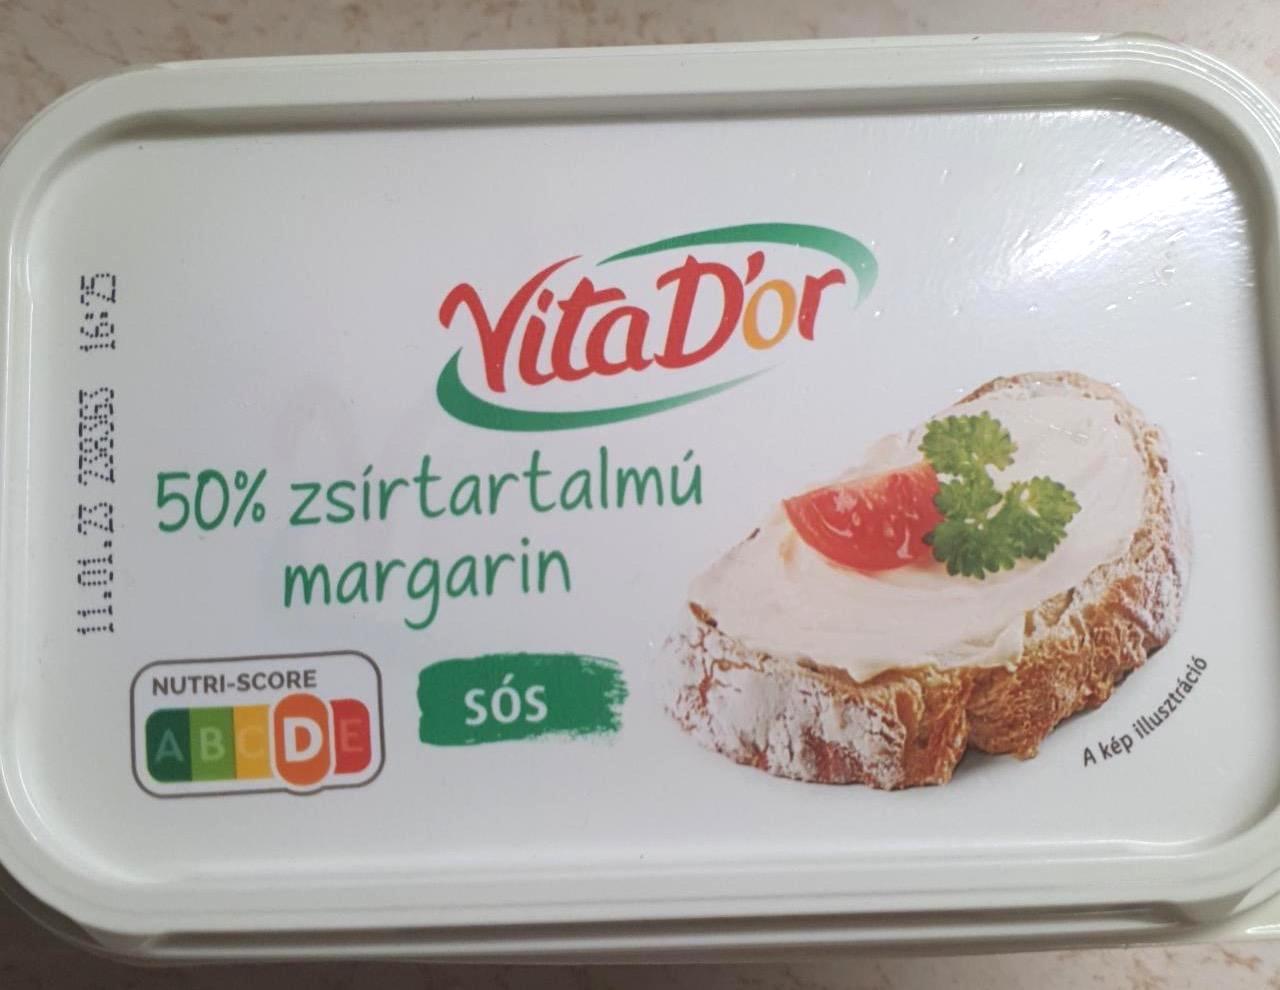 Képek - 50% zsírtartalmú margarin sós VitaDor